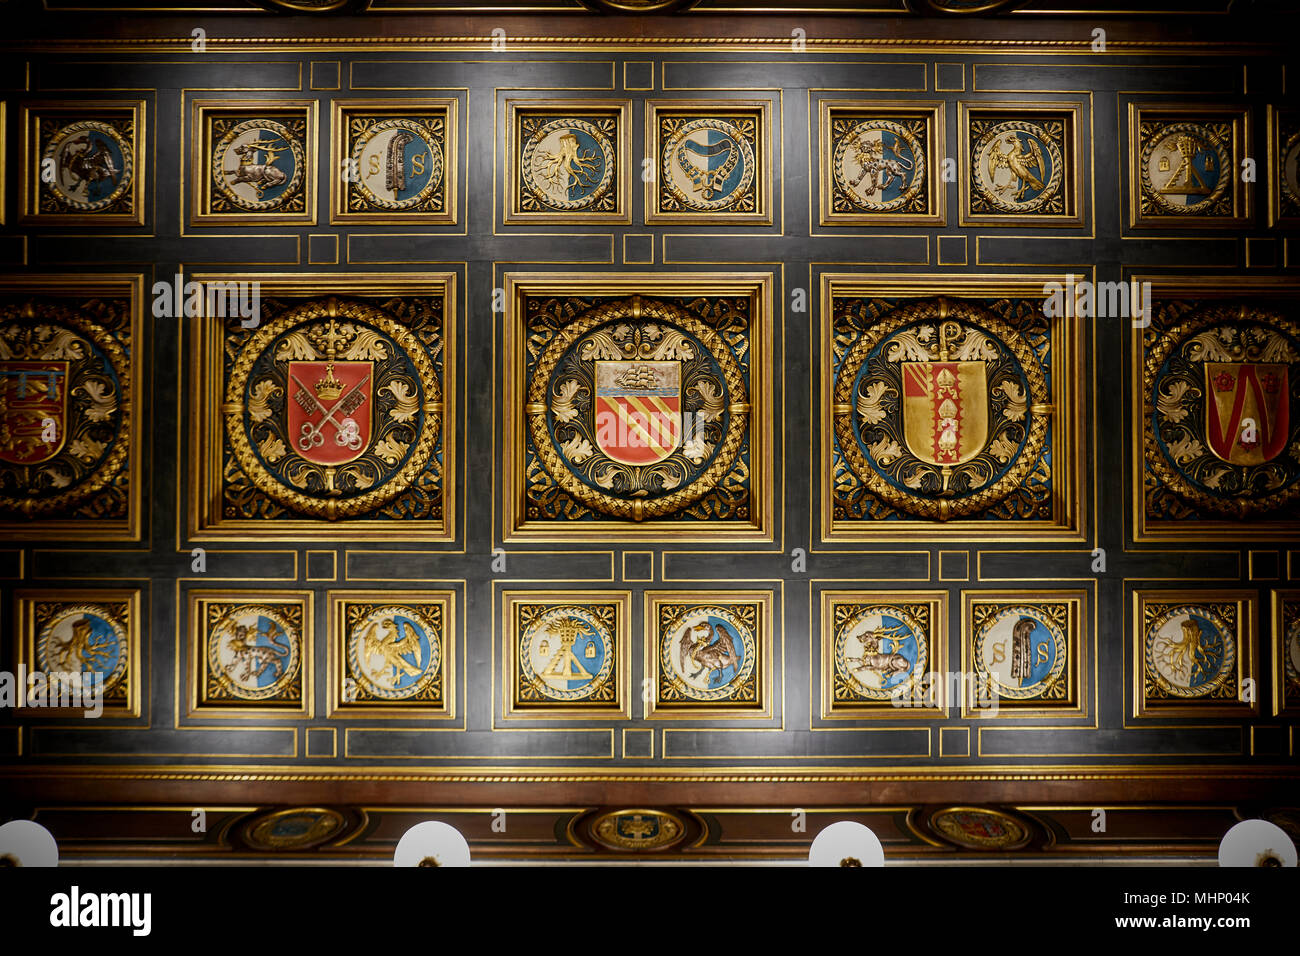 Manchester Central Library Shakespeare Eingangshalle Decke mit verzierten Wappen Stockfoto